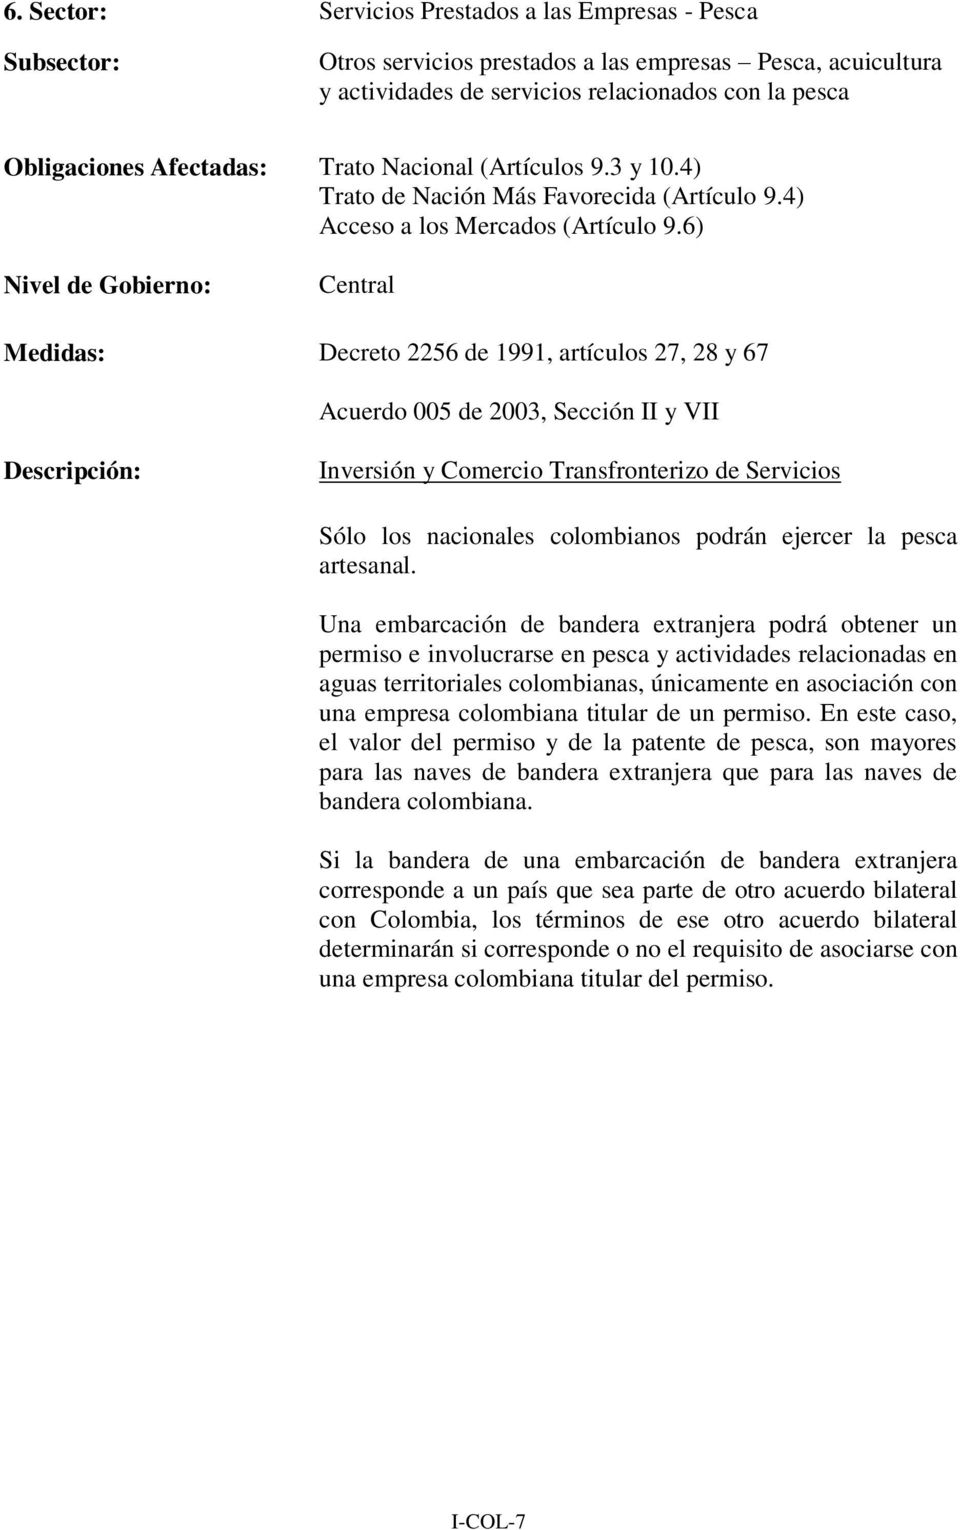 6) Medidas: Decreto 2256 de 1991, artículos 27, 28 y 67 Acuerdo 005 de 2003, Sección II y VII Inversión y Comercio Transfronterizo de Servicios Sólo los nacionales colombianos podrán ejercer la pesca